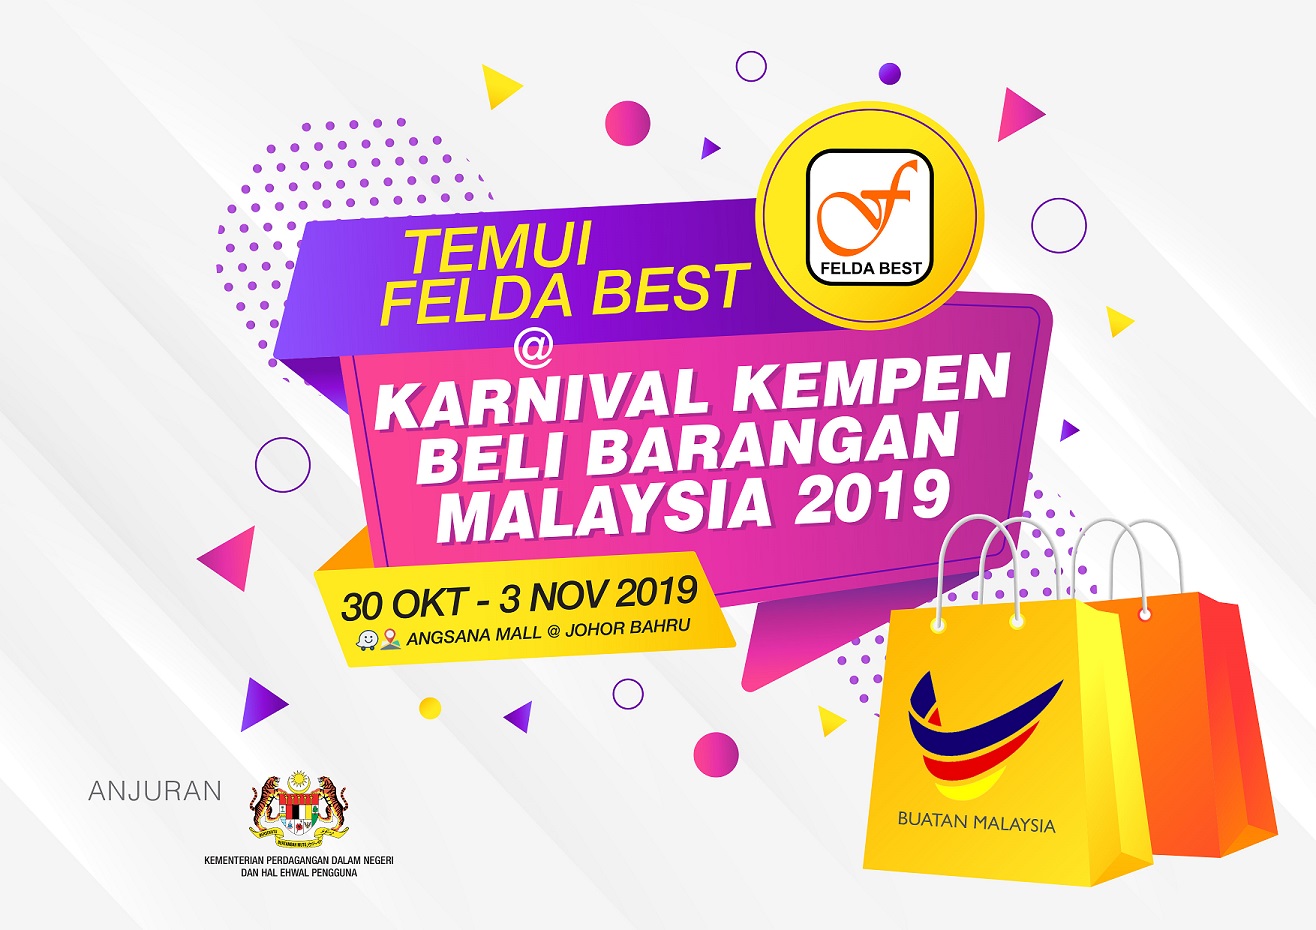 KARNIVAL KEMPEN BELI BARANGAN MALAYSIA 2019